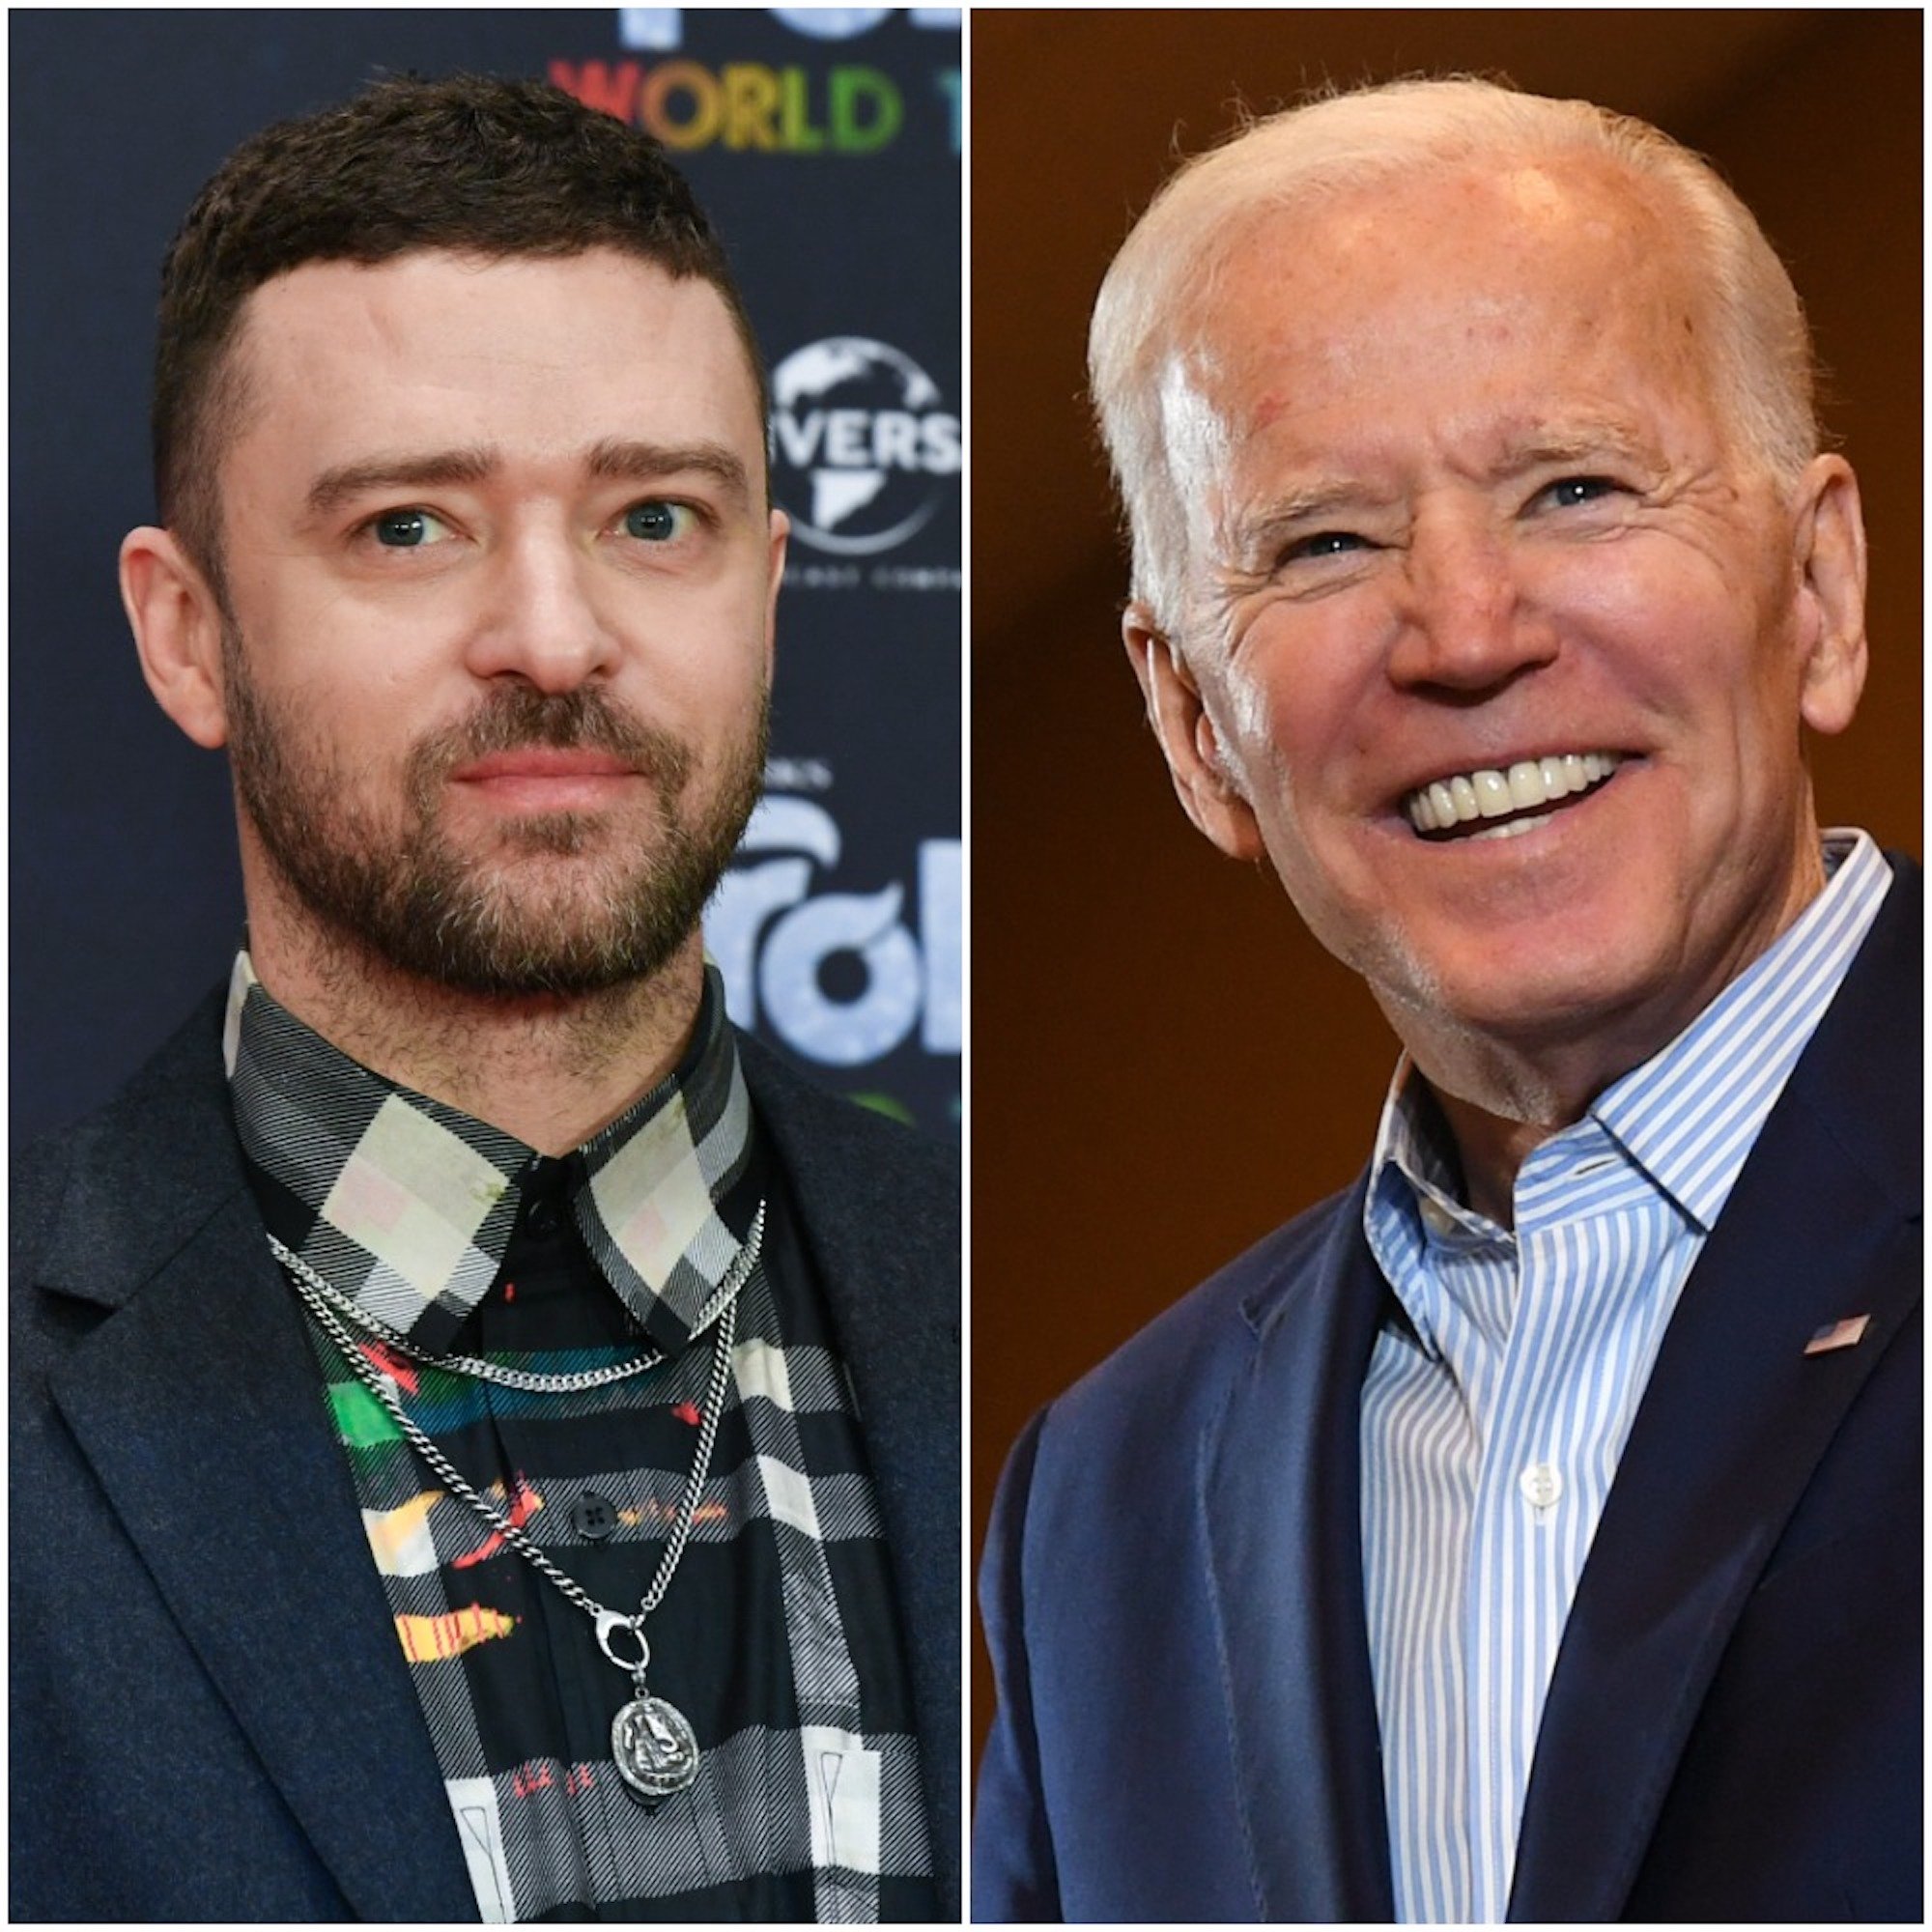 Justin Timberlake and Joe Biden